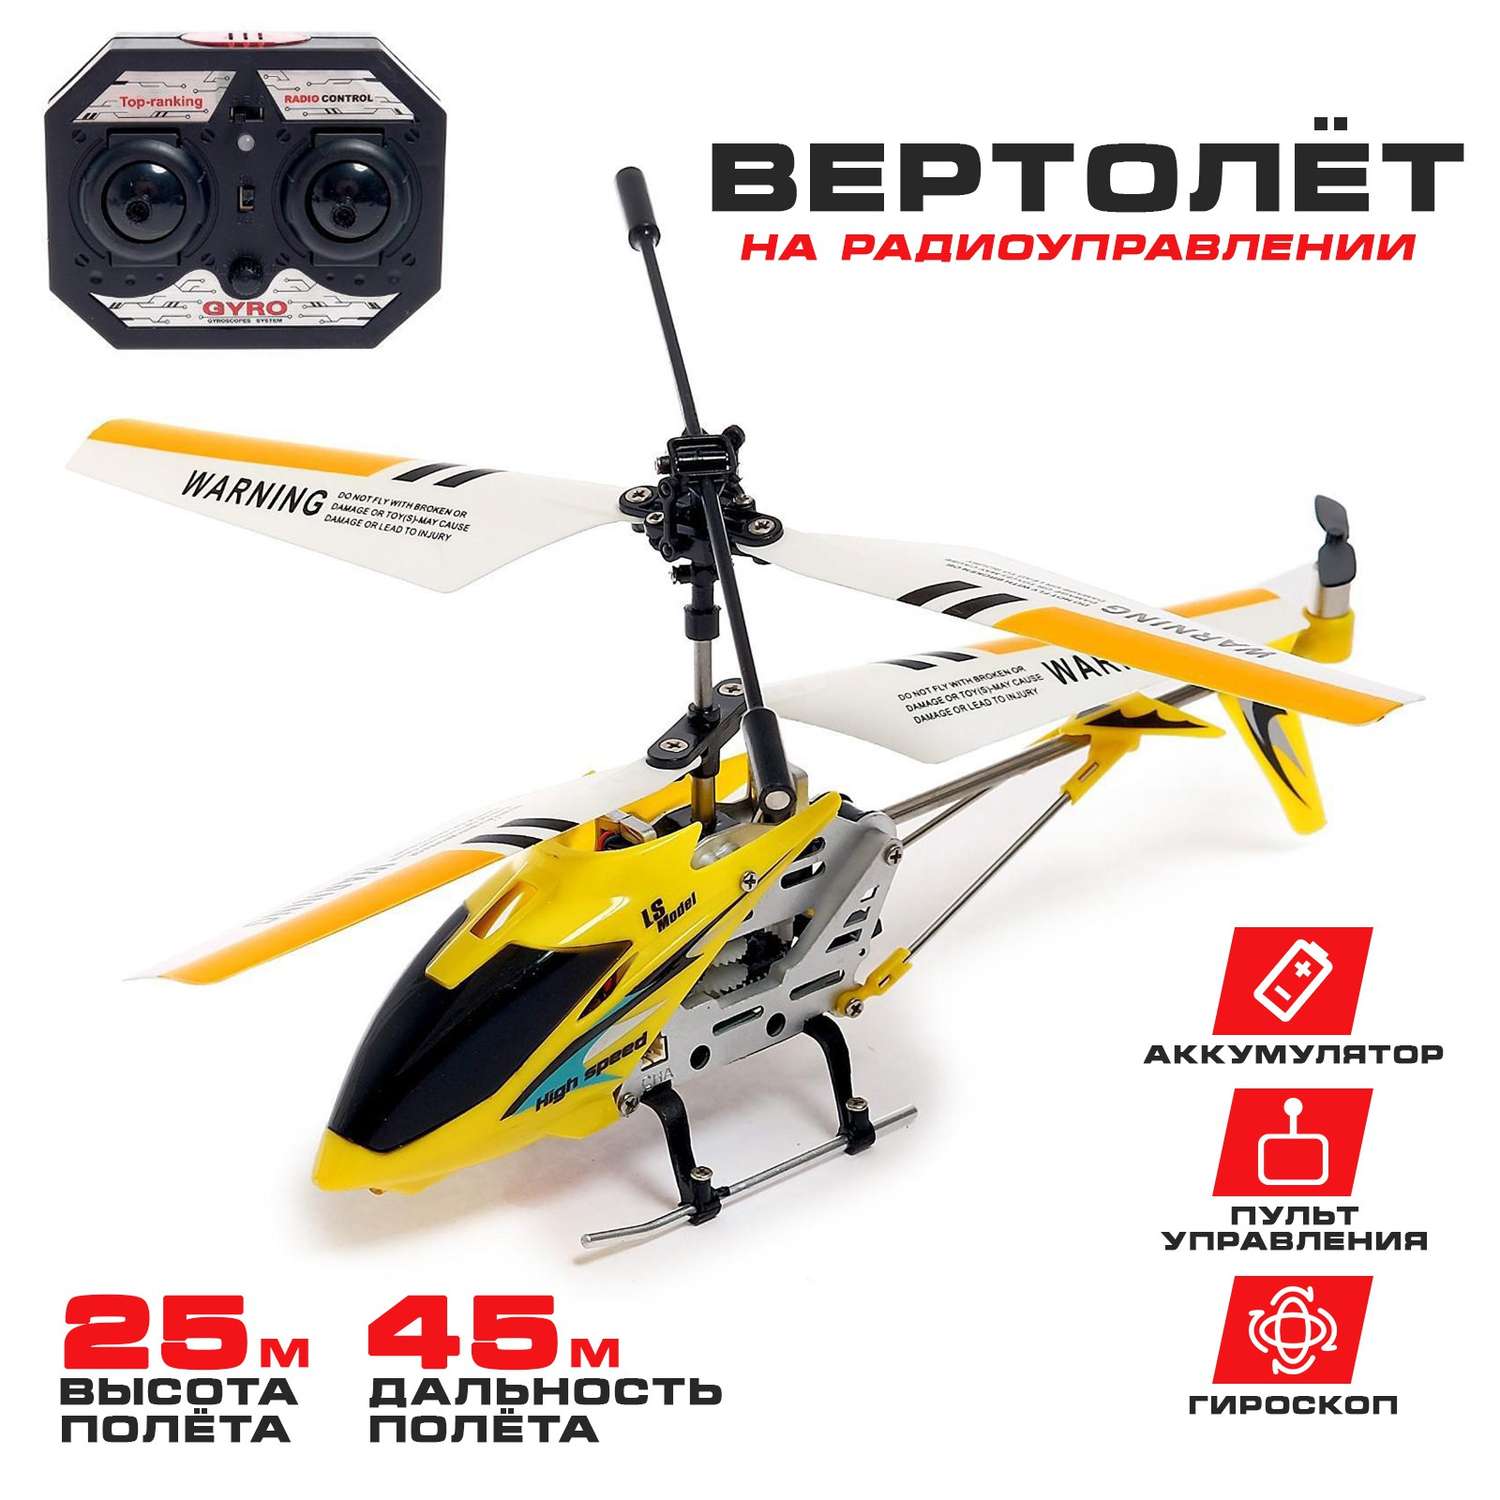 Вертолёт Автоград радиоуправляемый SKY с гироскопом цвет жёлтый - фото 1